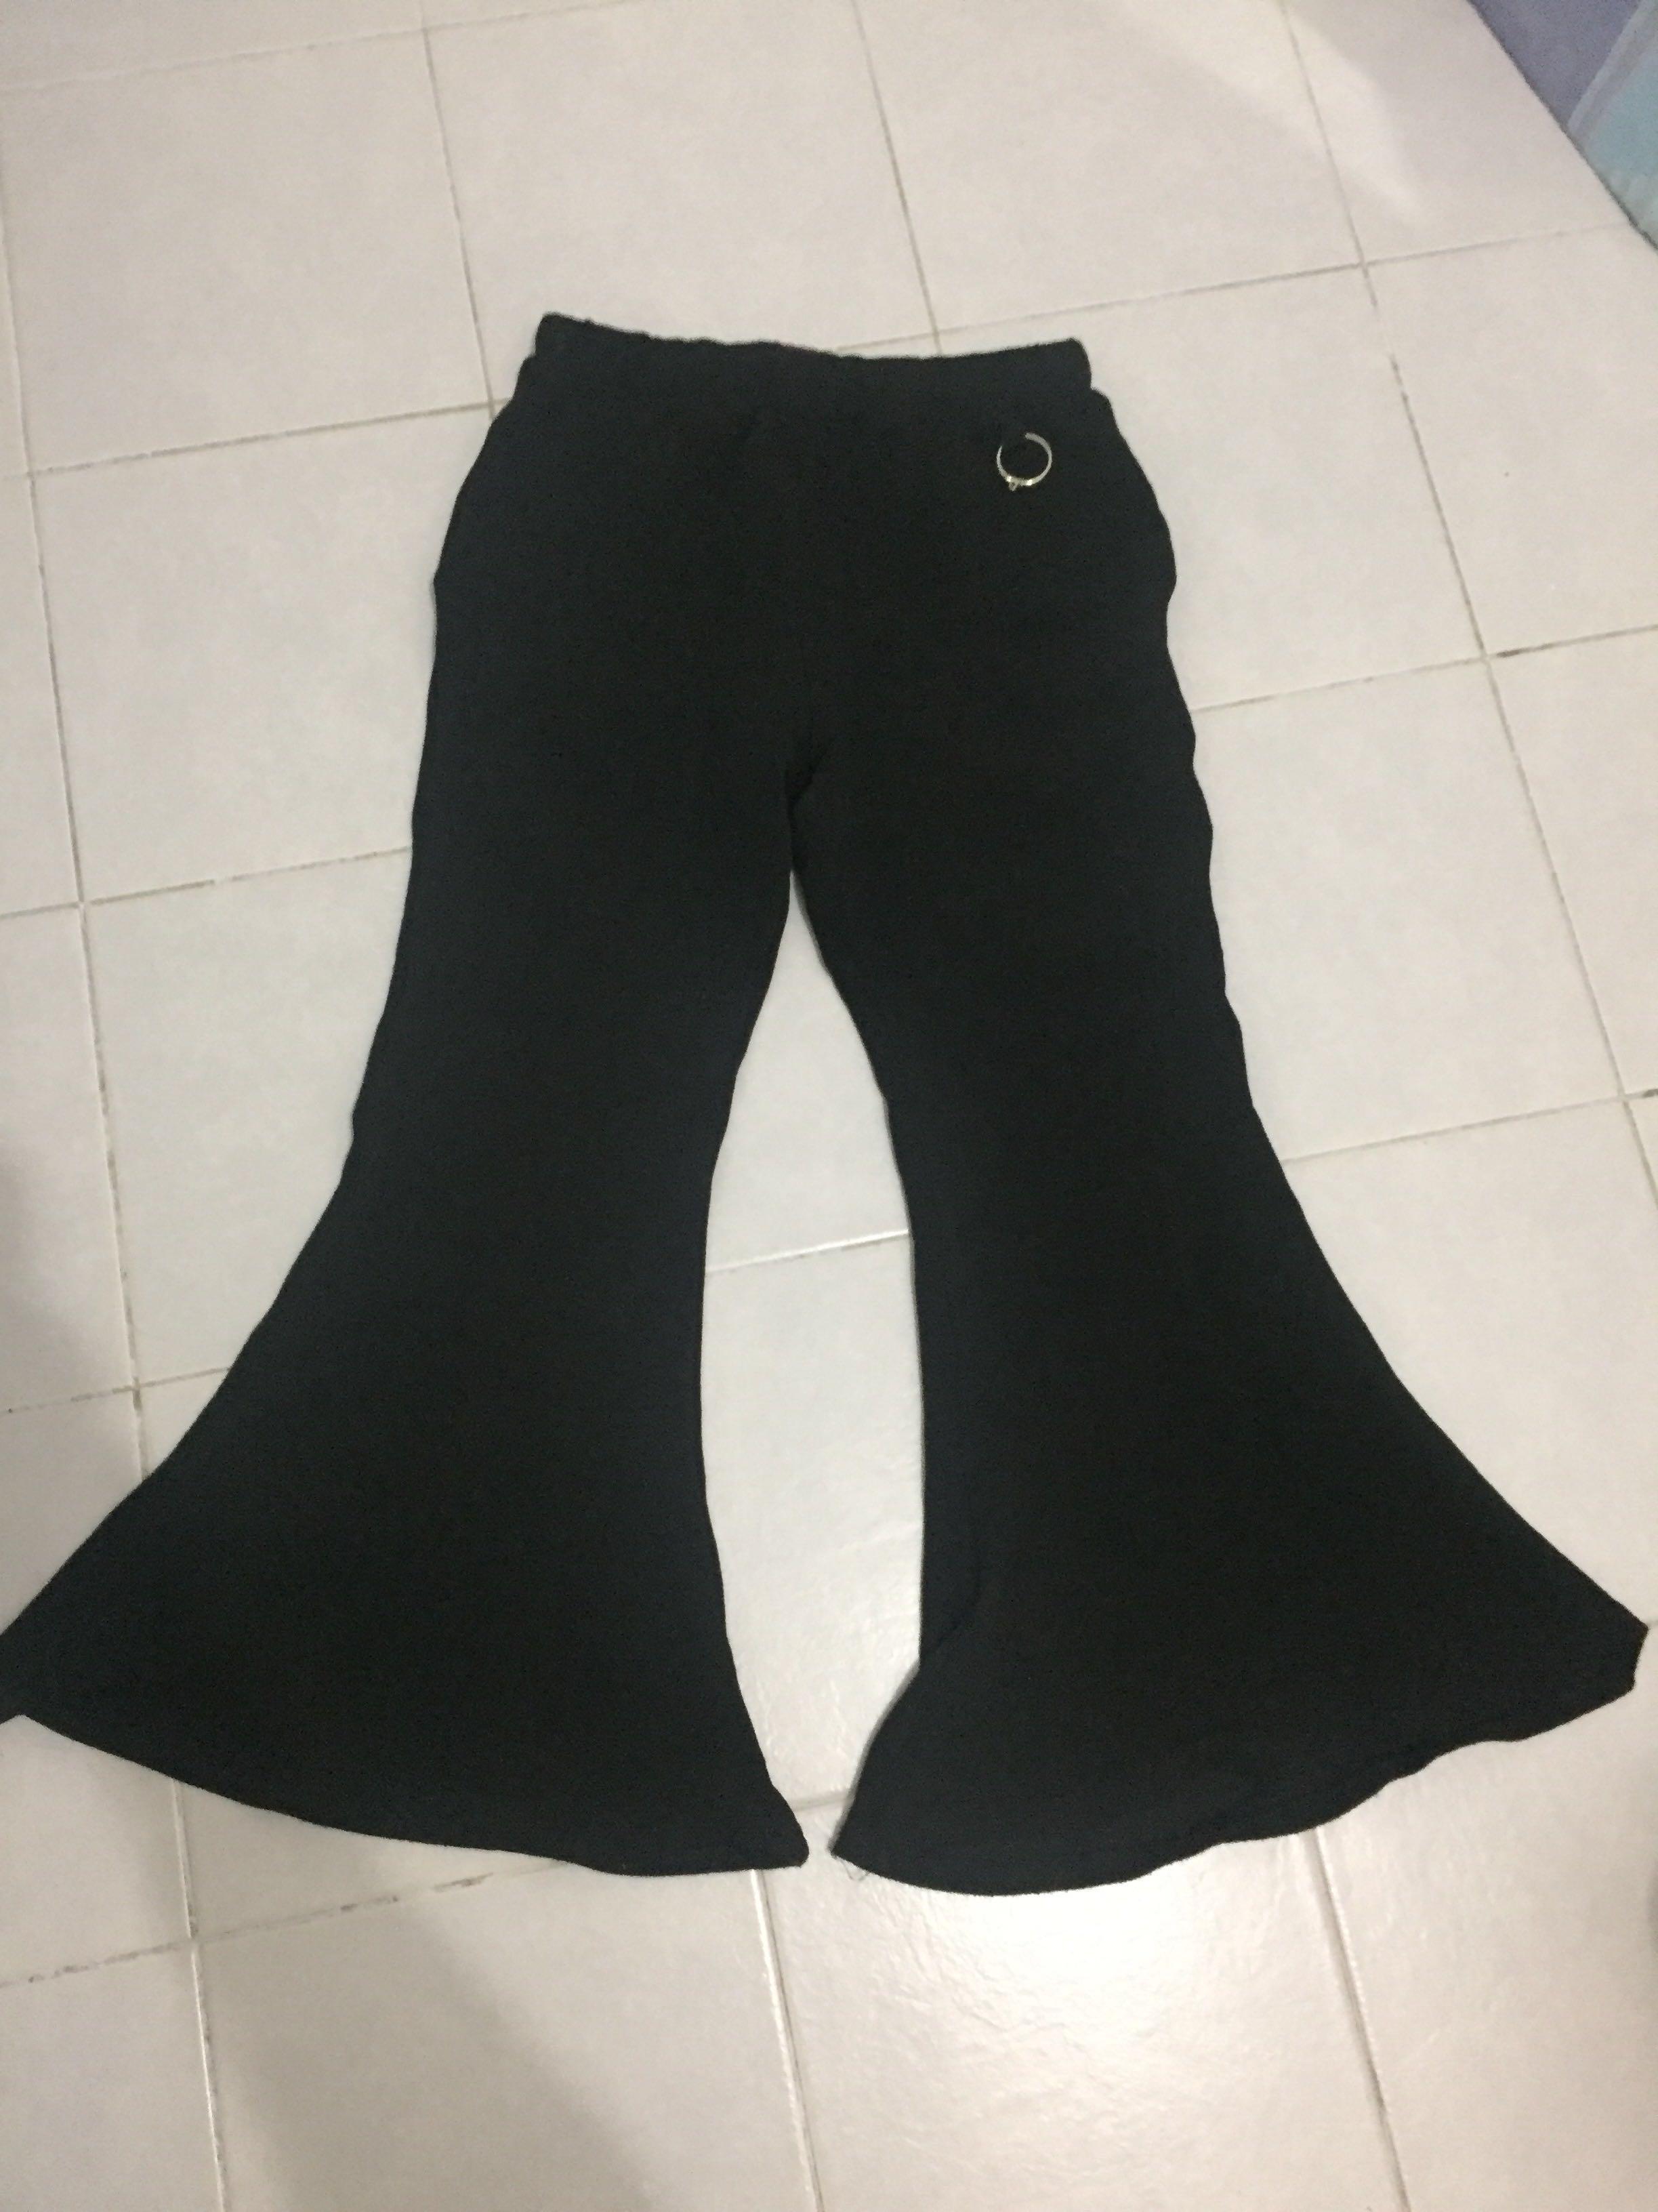 women's black bell bottom pants